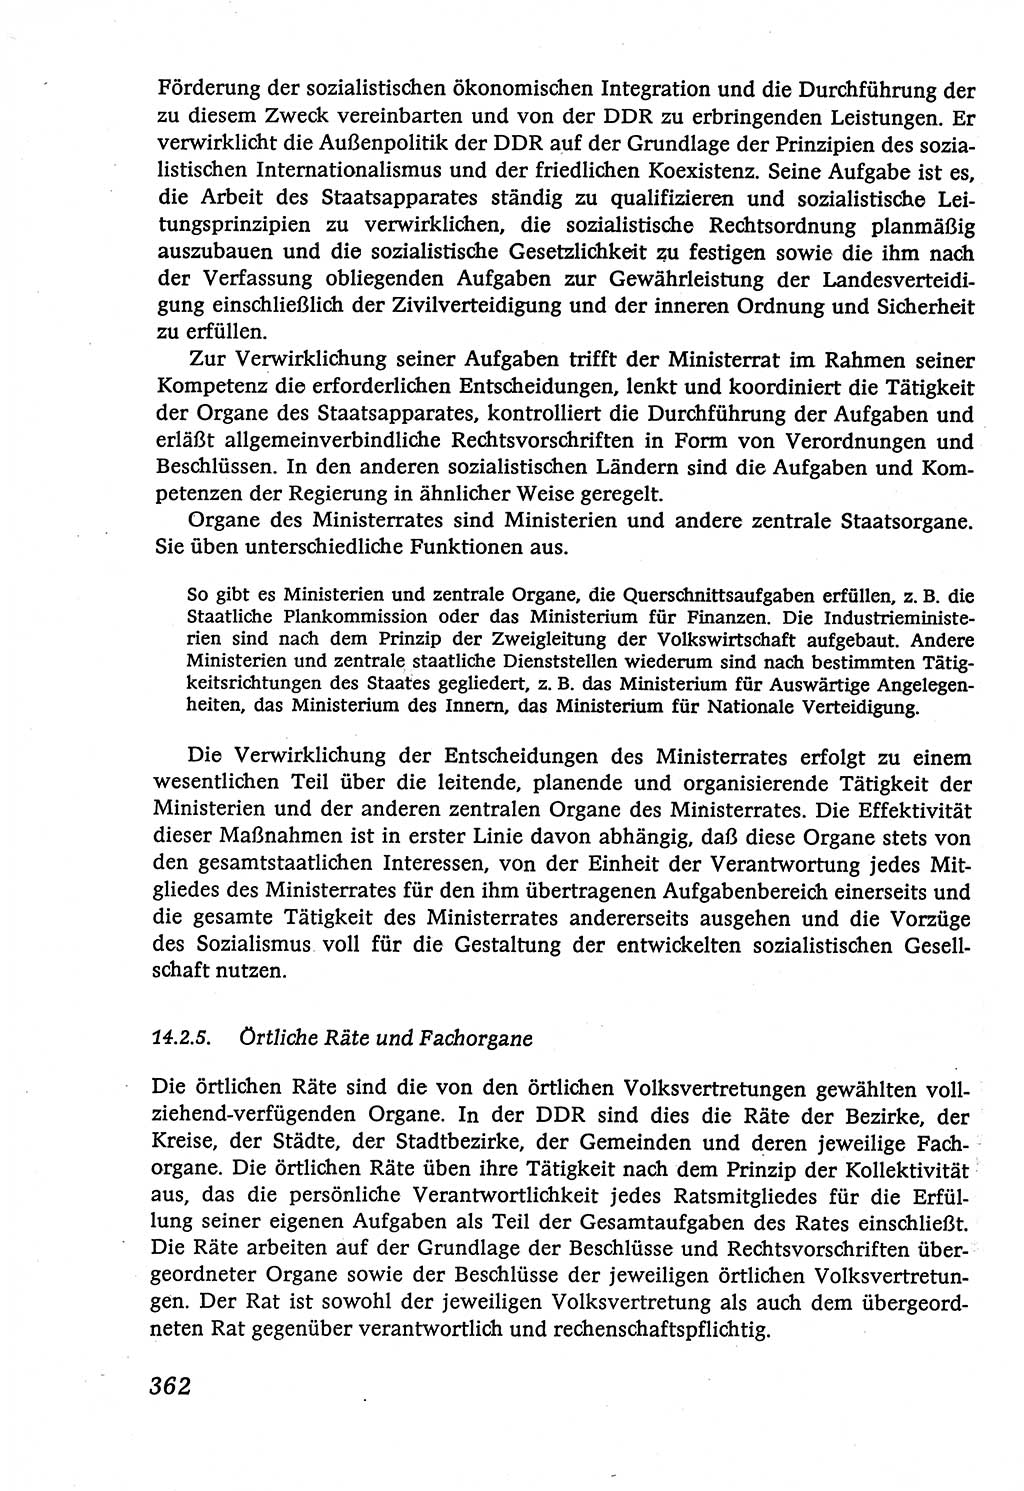 Marxistisch-leninistische (ML) Staats- und Rechtstheorie [Deutsche Demokratische Republik (DDR)], Lehrbuch 1980, Seite 362 (ML St.-R.-Th. DDR Lb. 1980, S. 362)